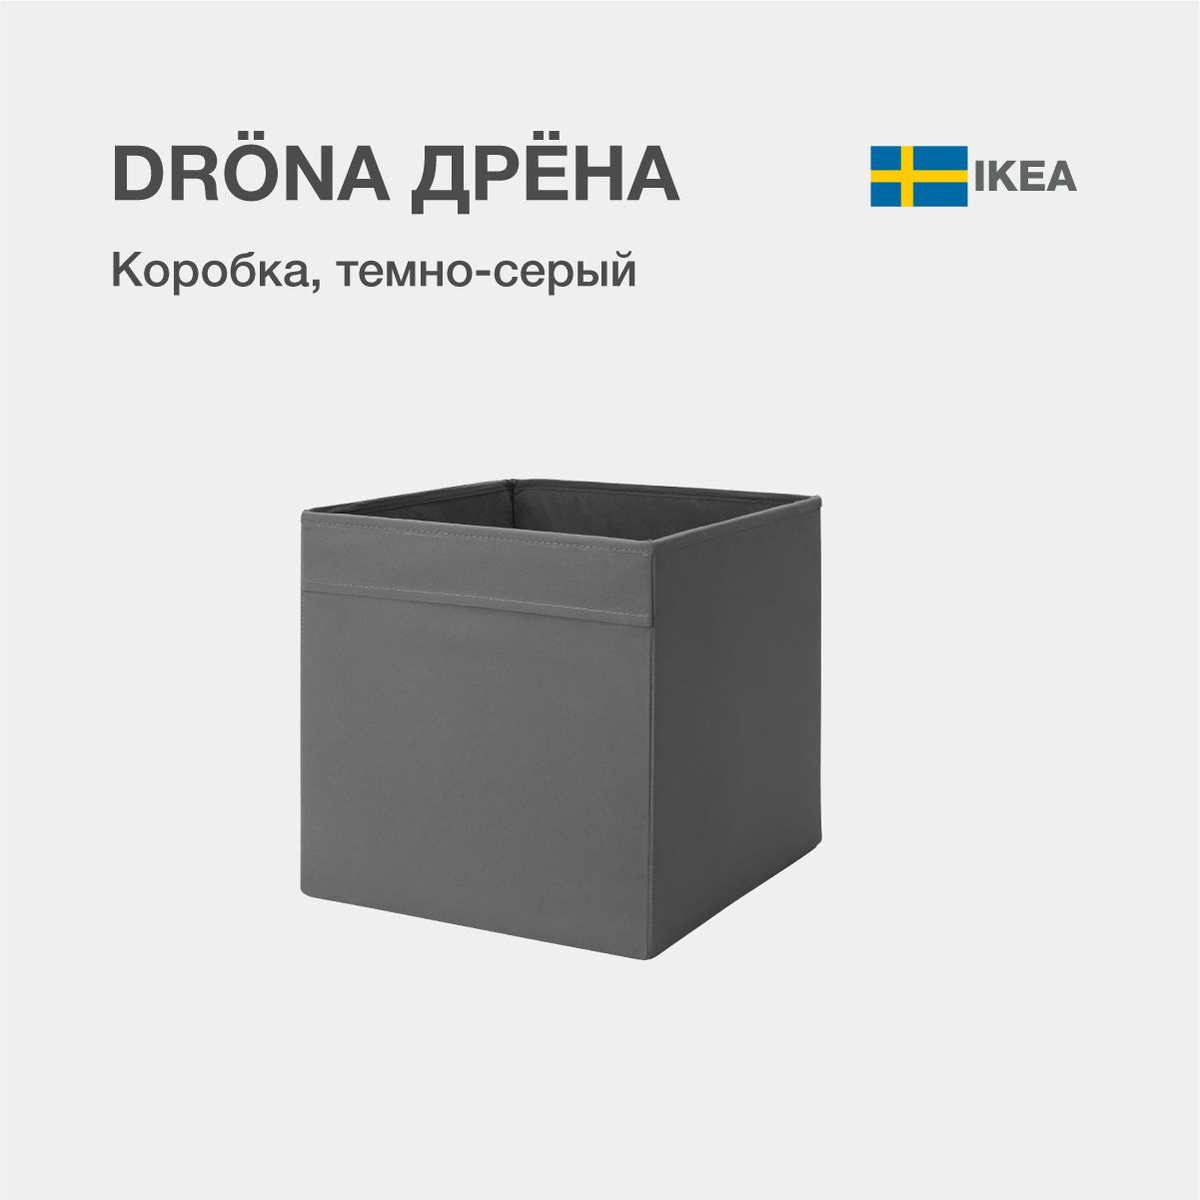 DRÖNA ДРЁНА Коробка, темно-серый, 33x38x33 см